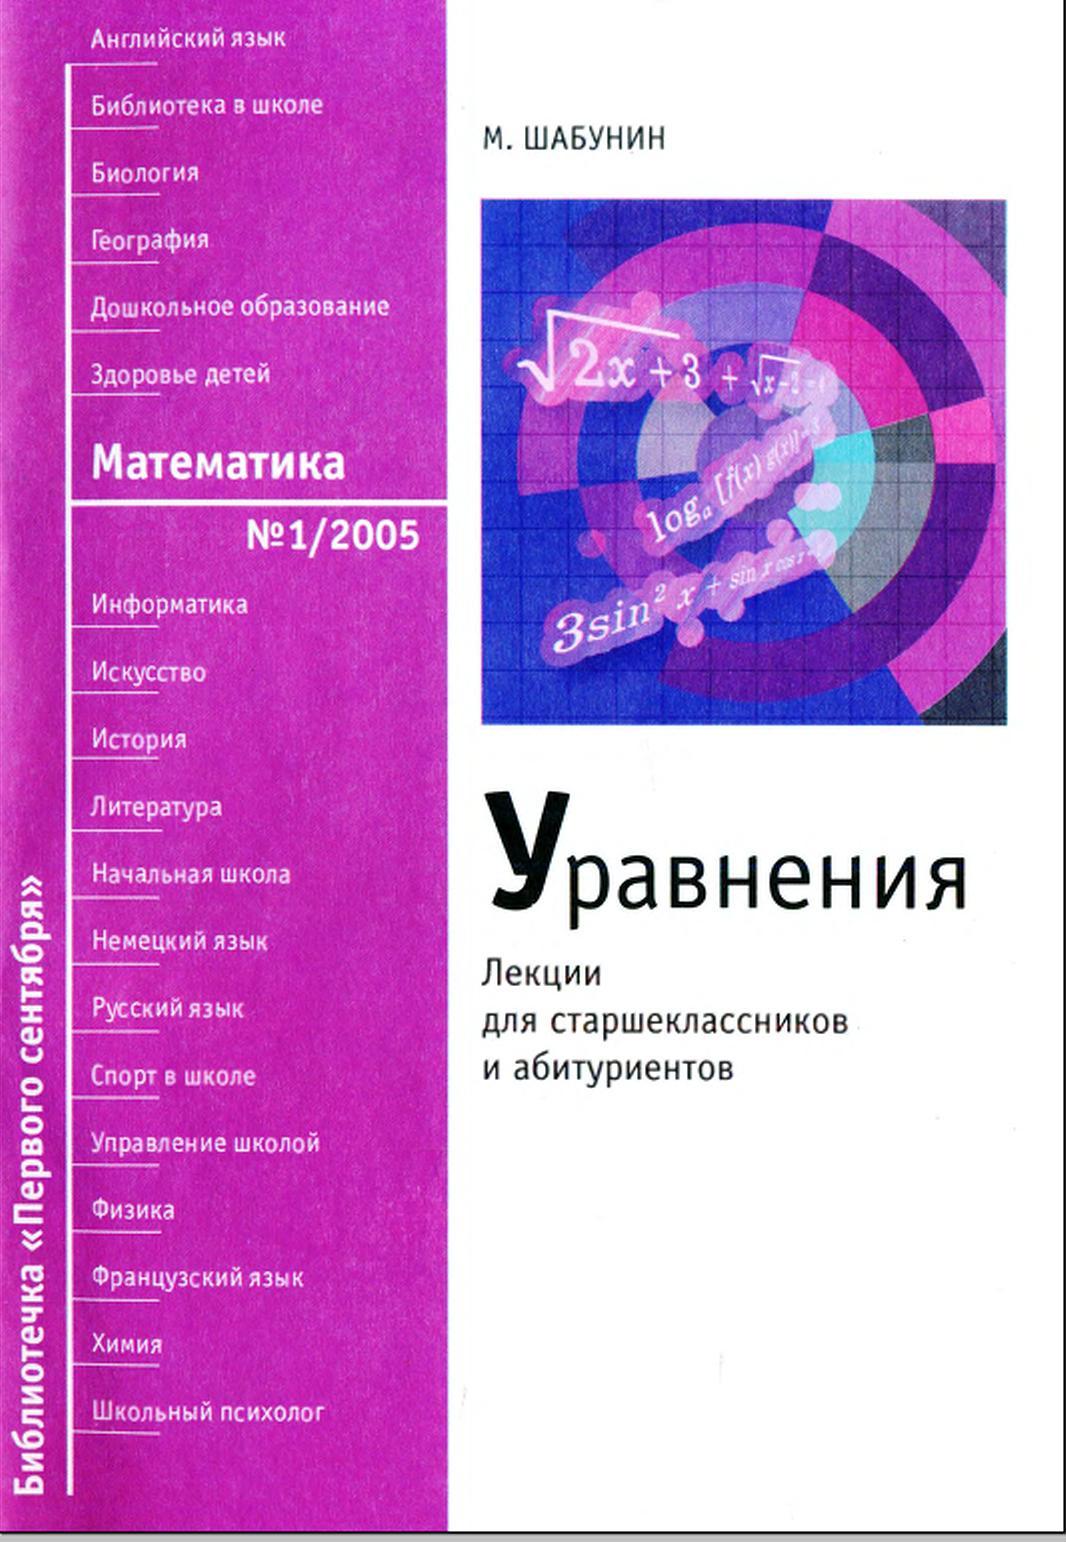 Уравнения, Лекции для старшеклассников и абитуриентов, Шабунин М., 2005